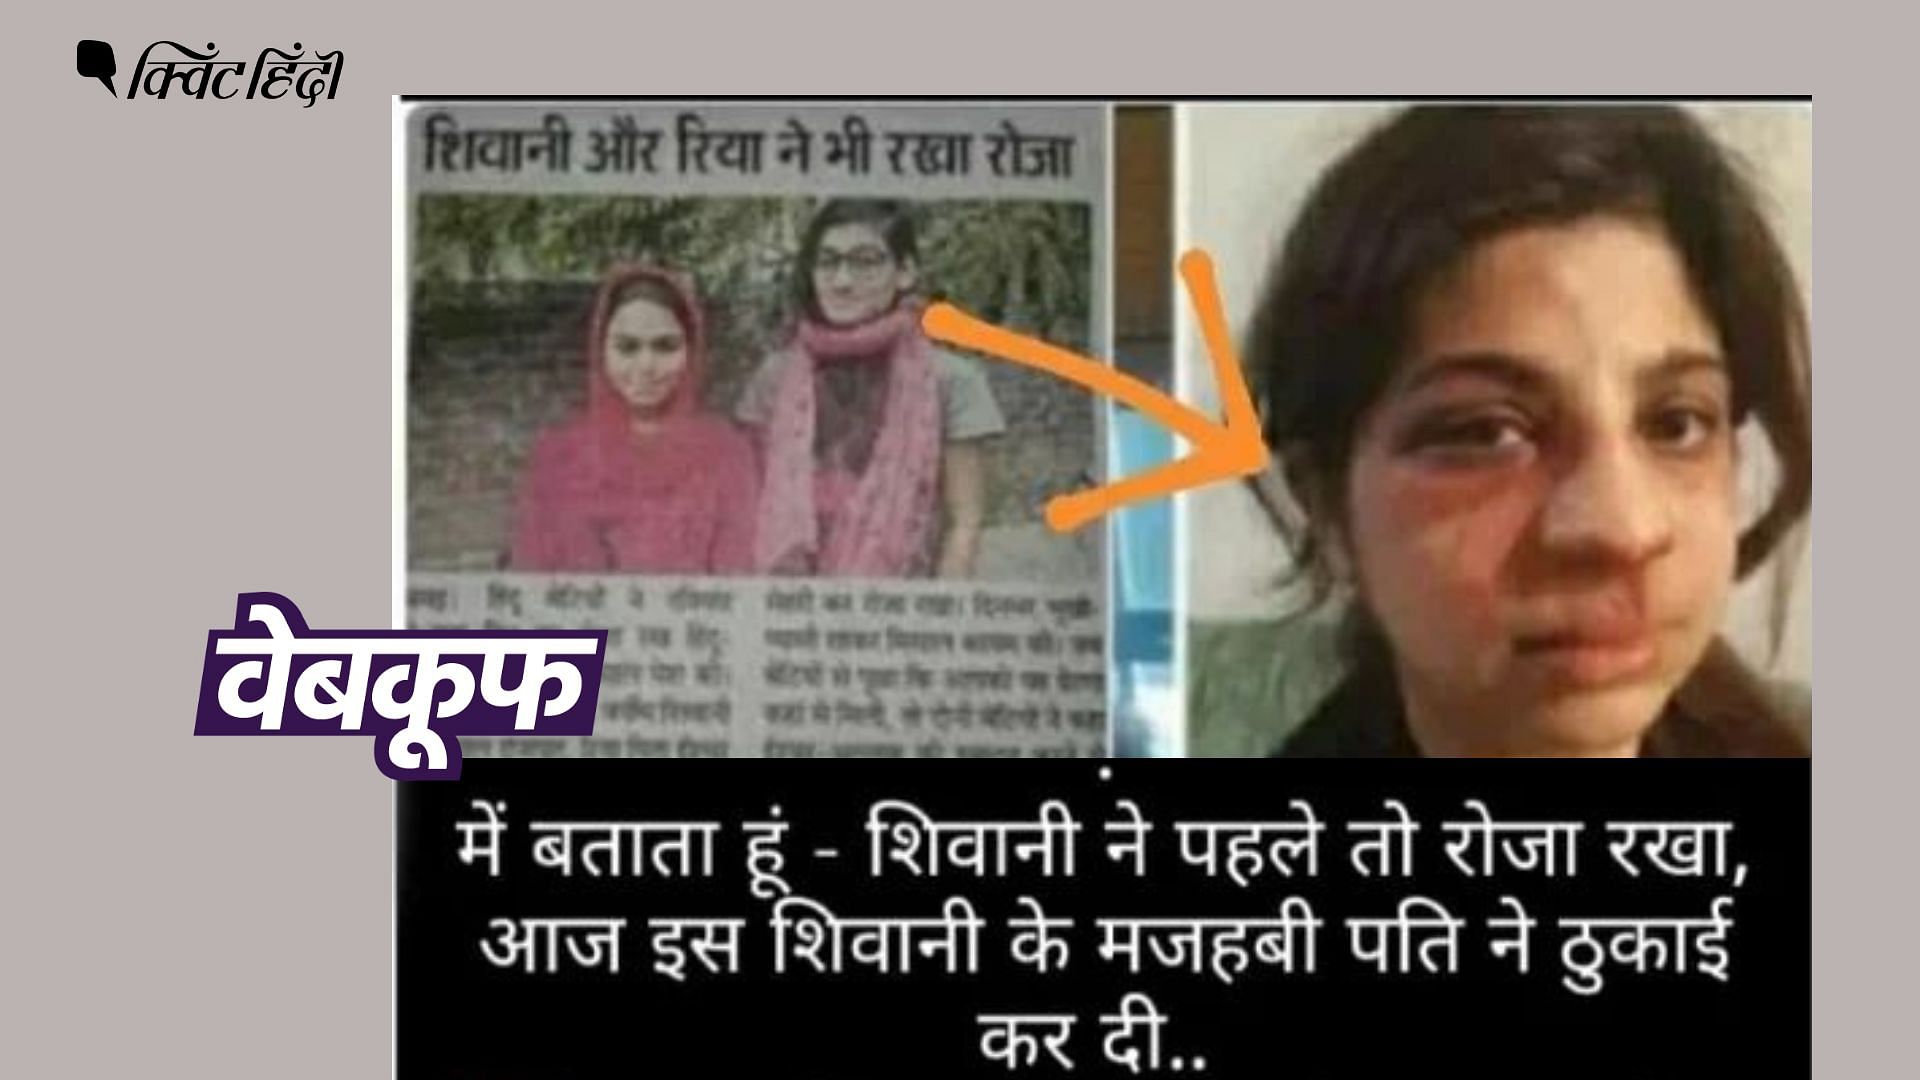 <div class="paragraphs"><p>जिस महिला के चेहरे पर चोट के निशान दिख रहे हैं, वो पाकिस्तानी महिला है</p></div>